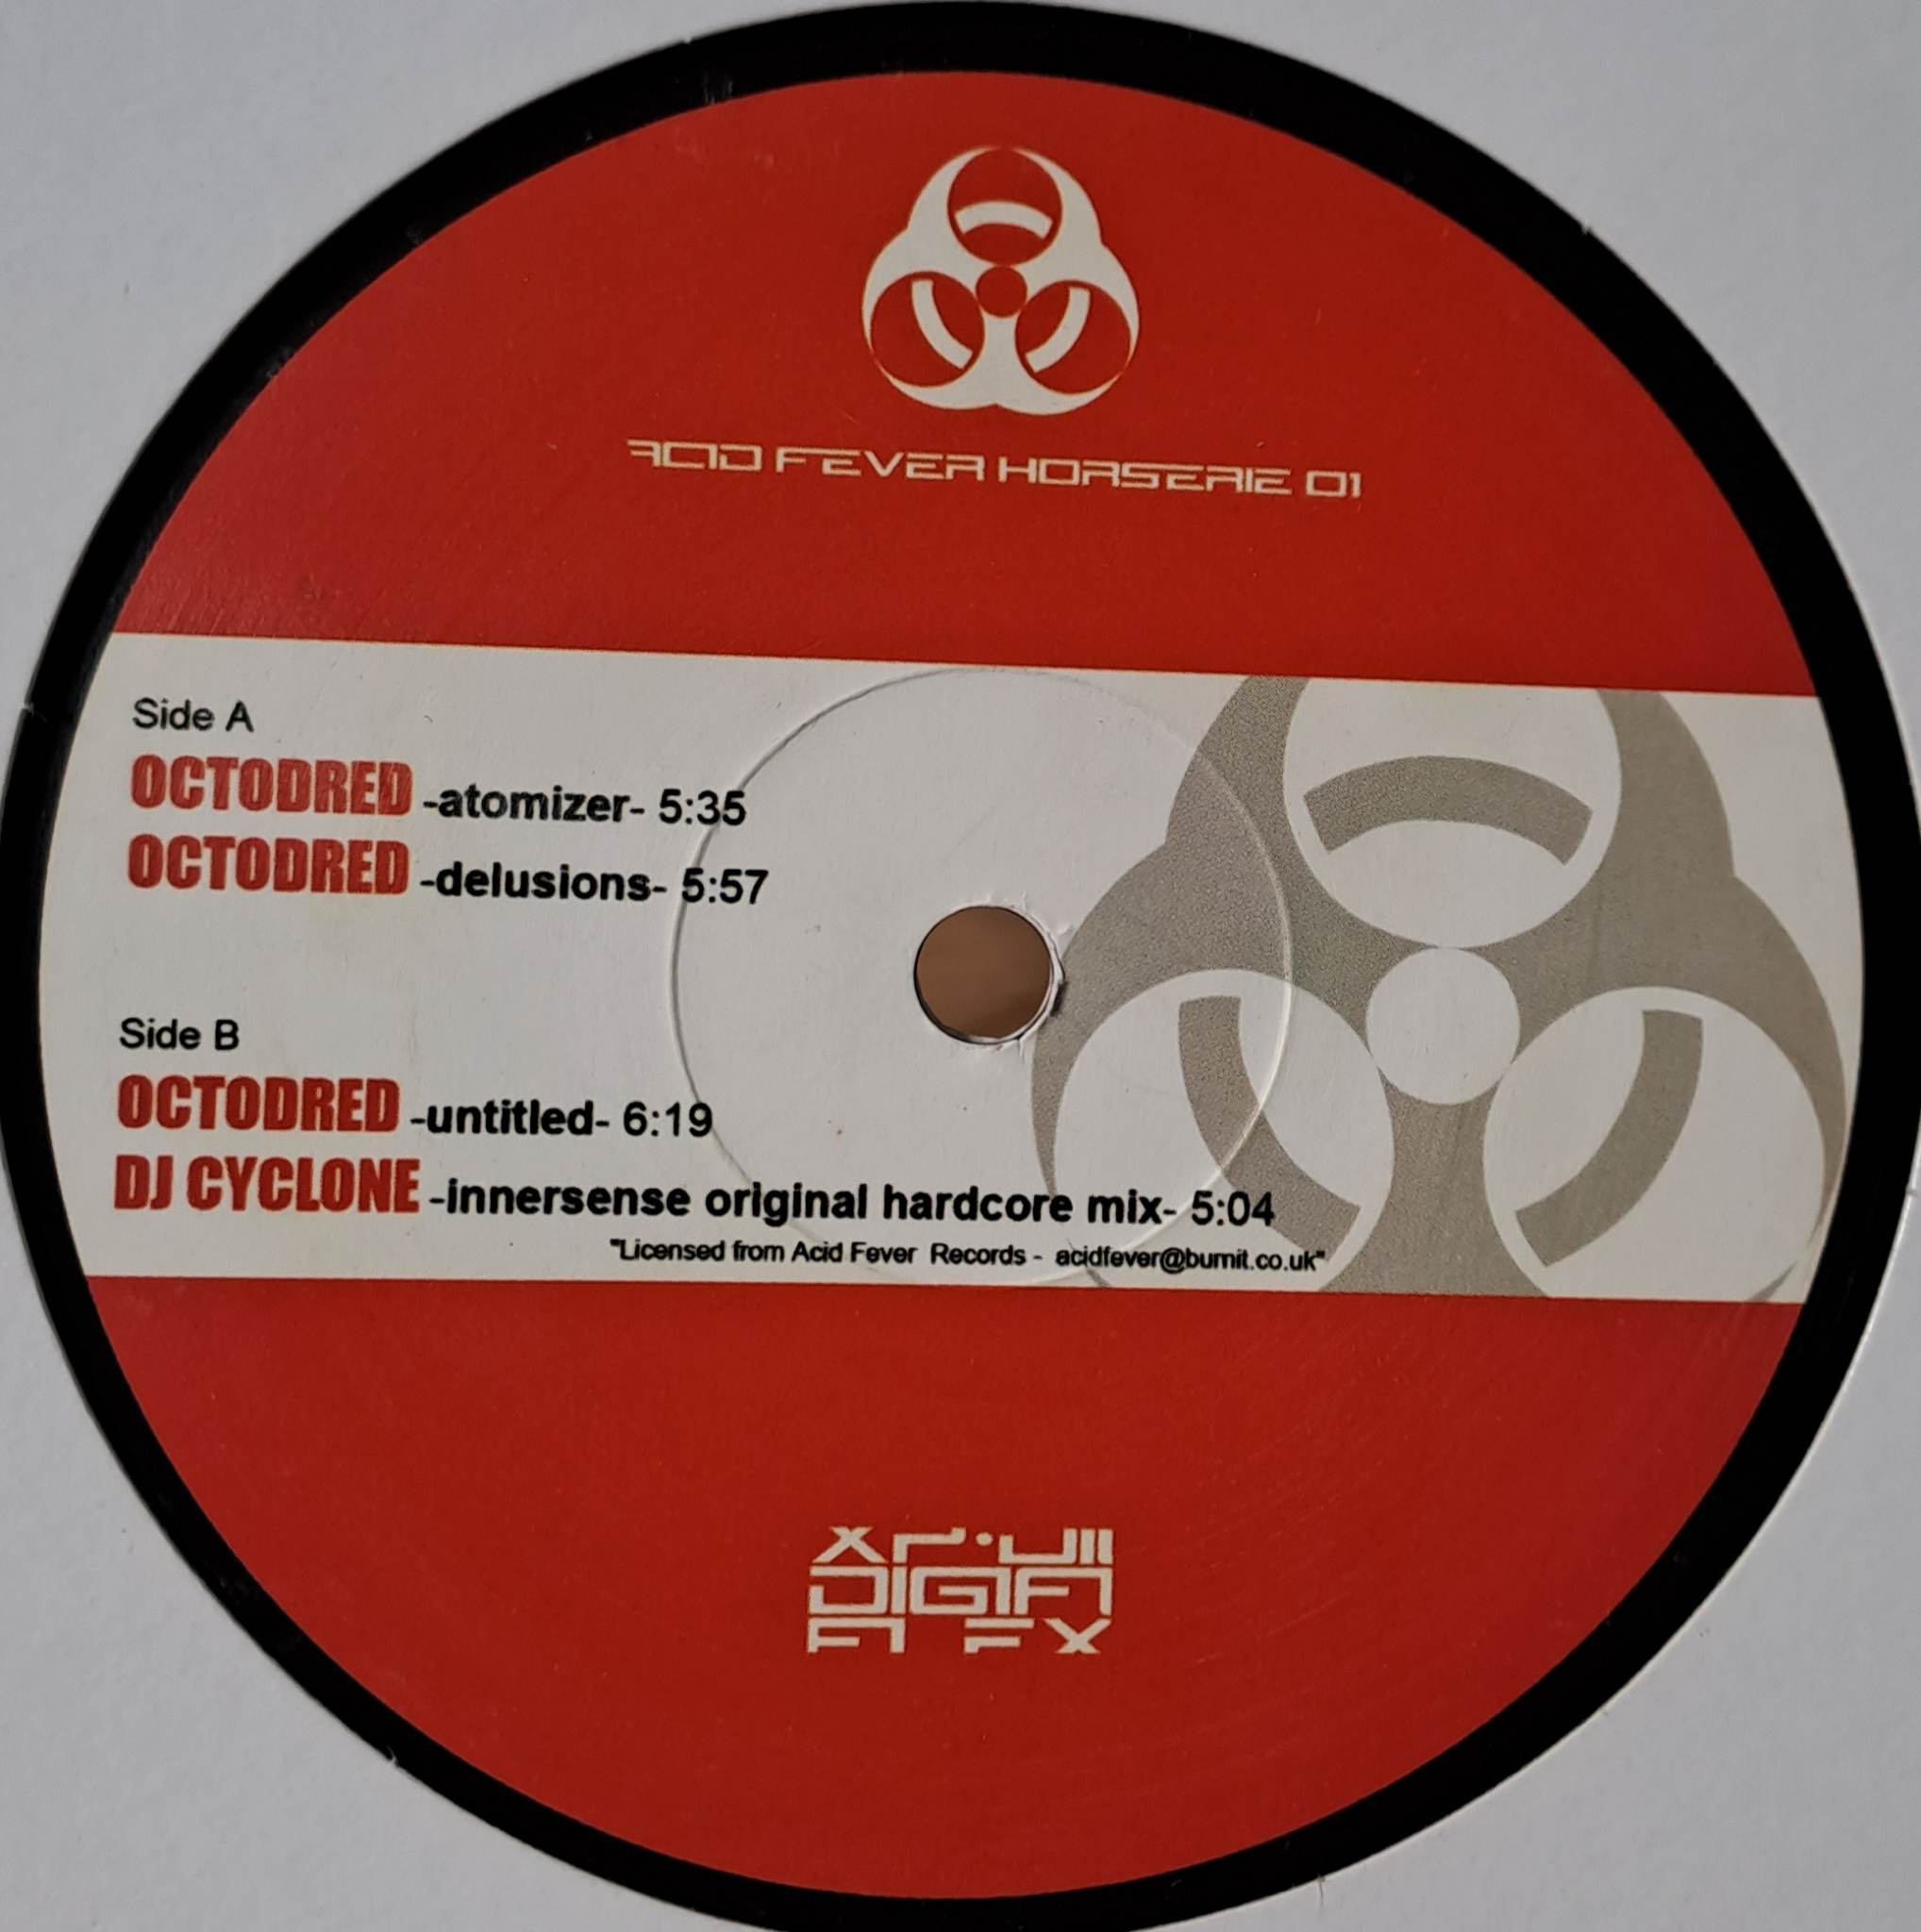 Acid Fever Horserie 01 - vinyle acid